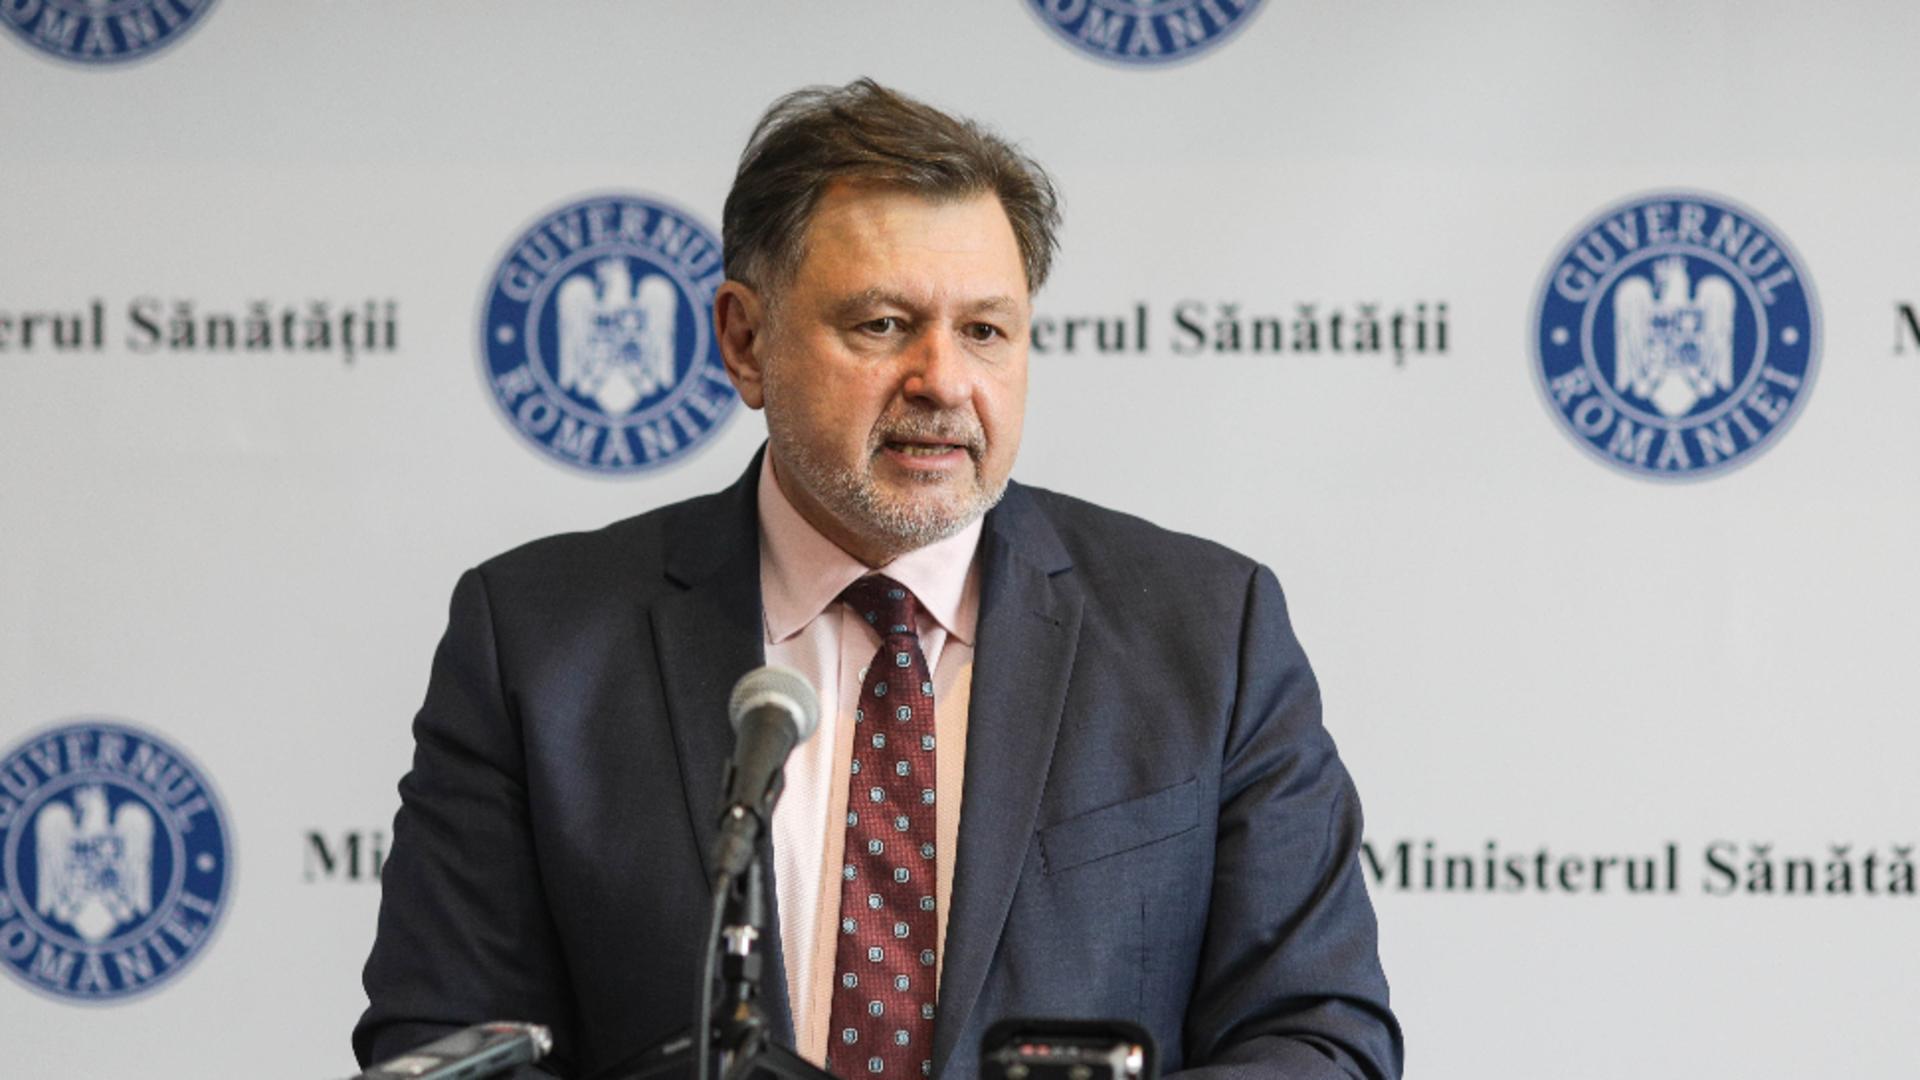 Ministrul Sănătăţii, Alexandru Rafila